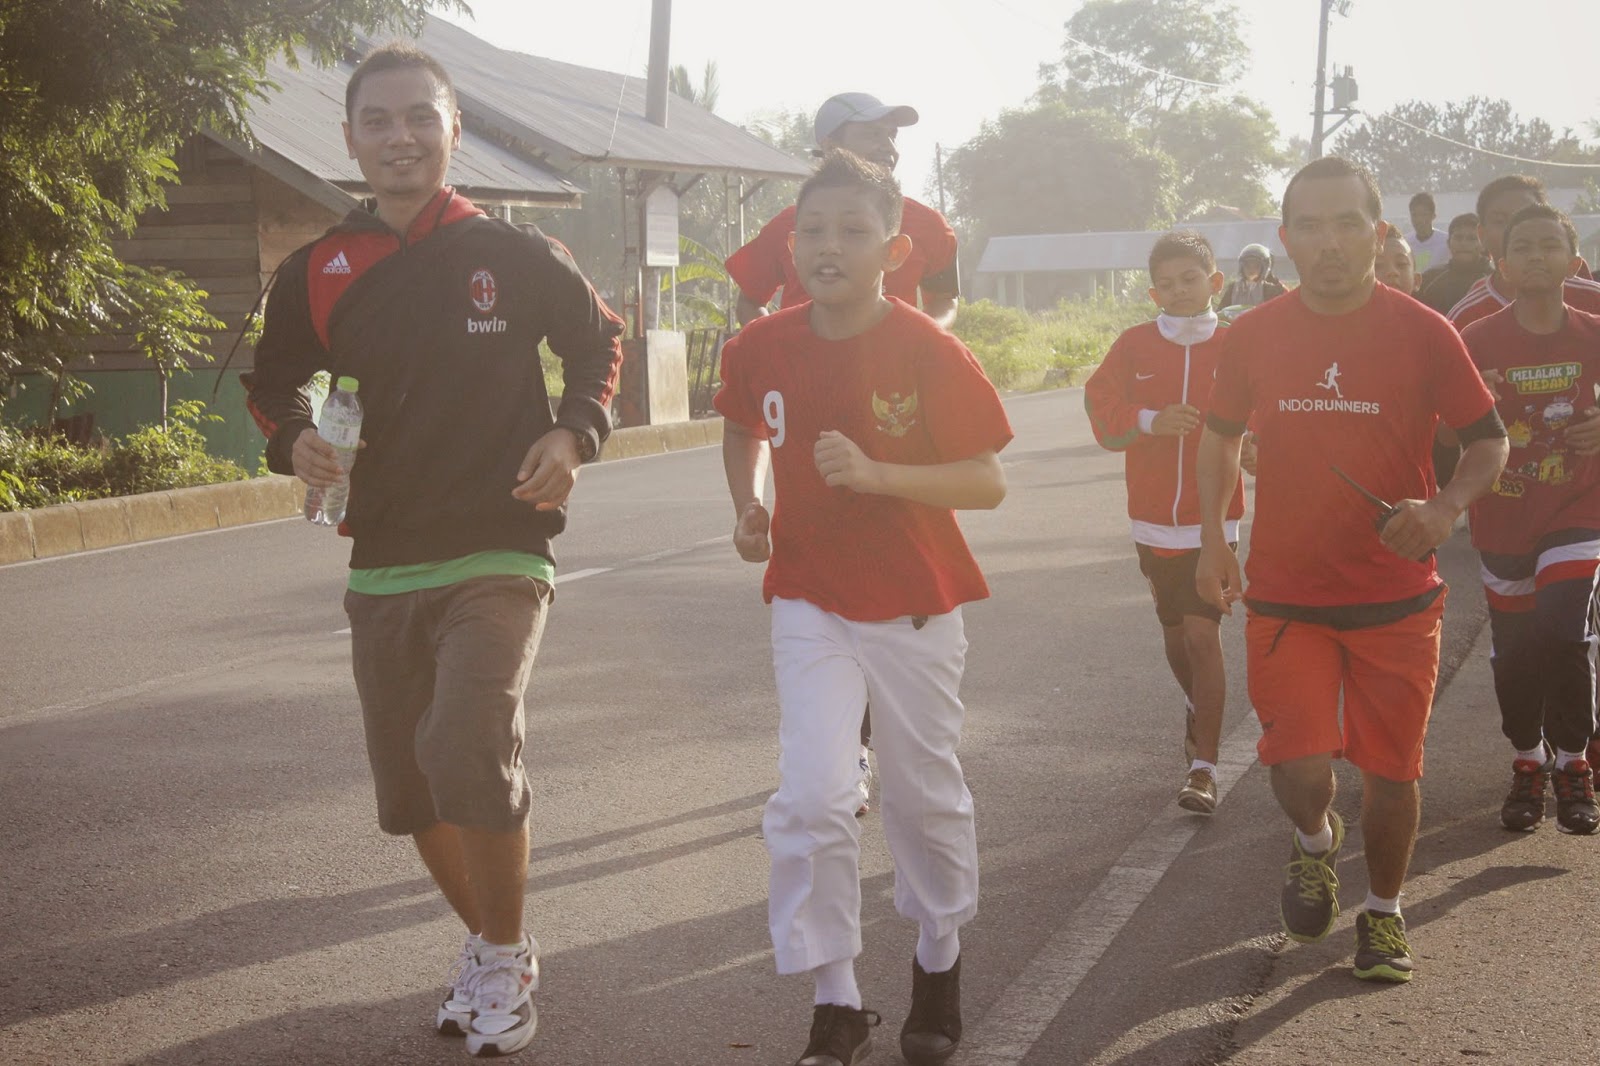 #iuRun Indo Runners Banda Aceh untuk #IuranPublik